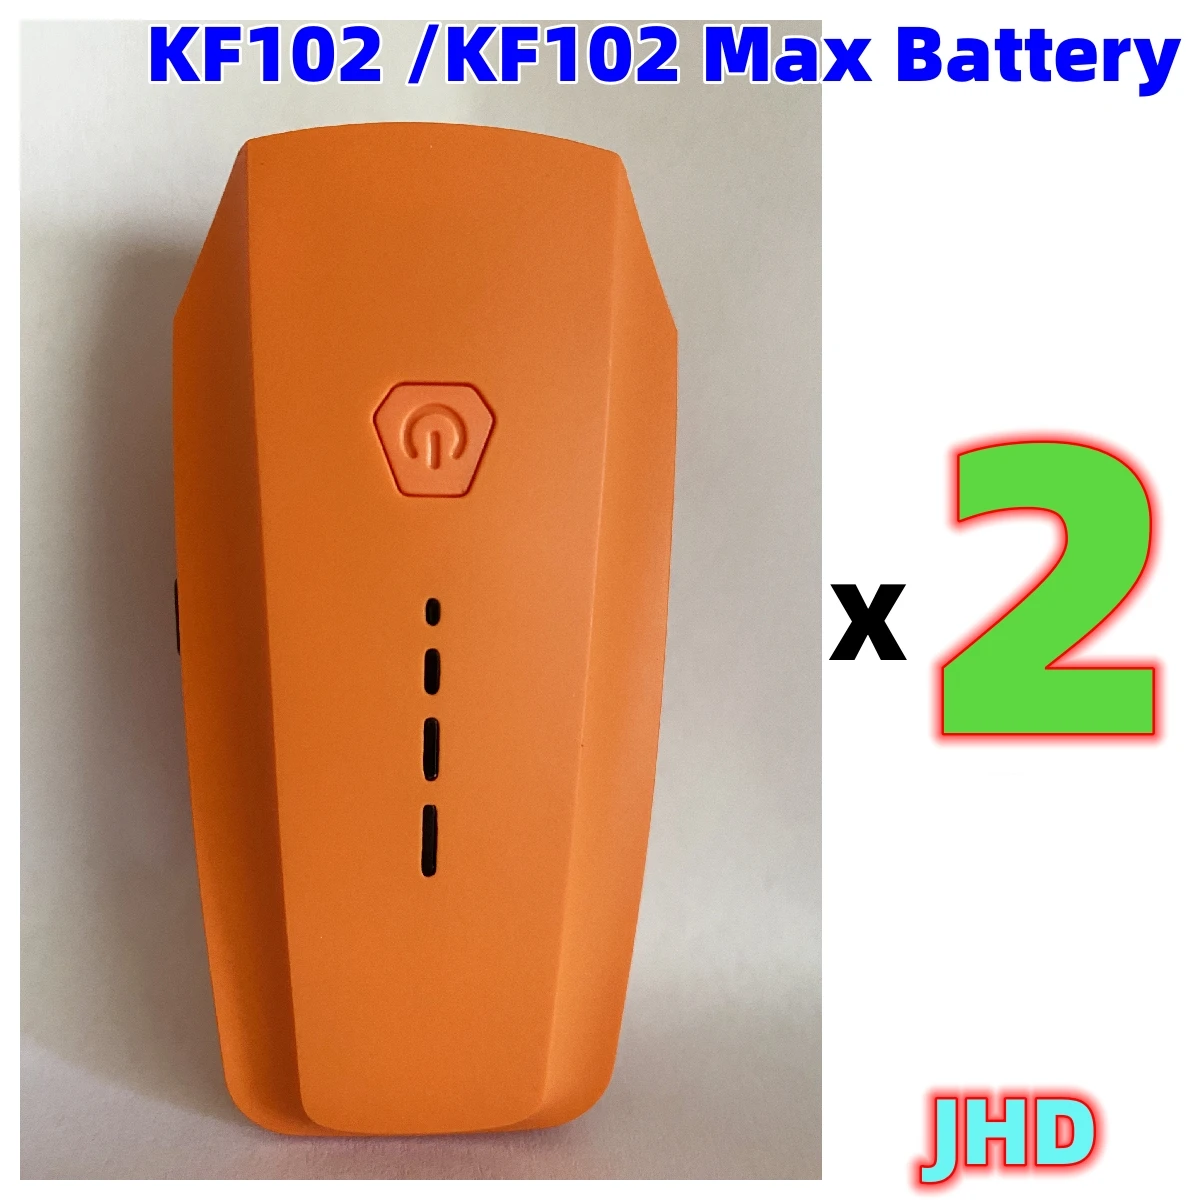 JHD me Shumicë KF102 MAX Baterisë Portokalli Për KF102 Rri 7.4 V 2200mAh Origjinale Rri kot e Baterisë KF102 MAX Pajisje Pjesë . ' - ' . 2